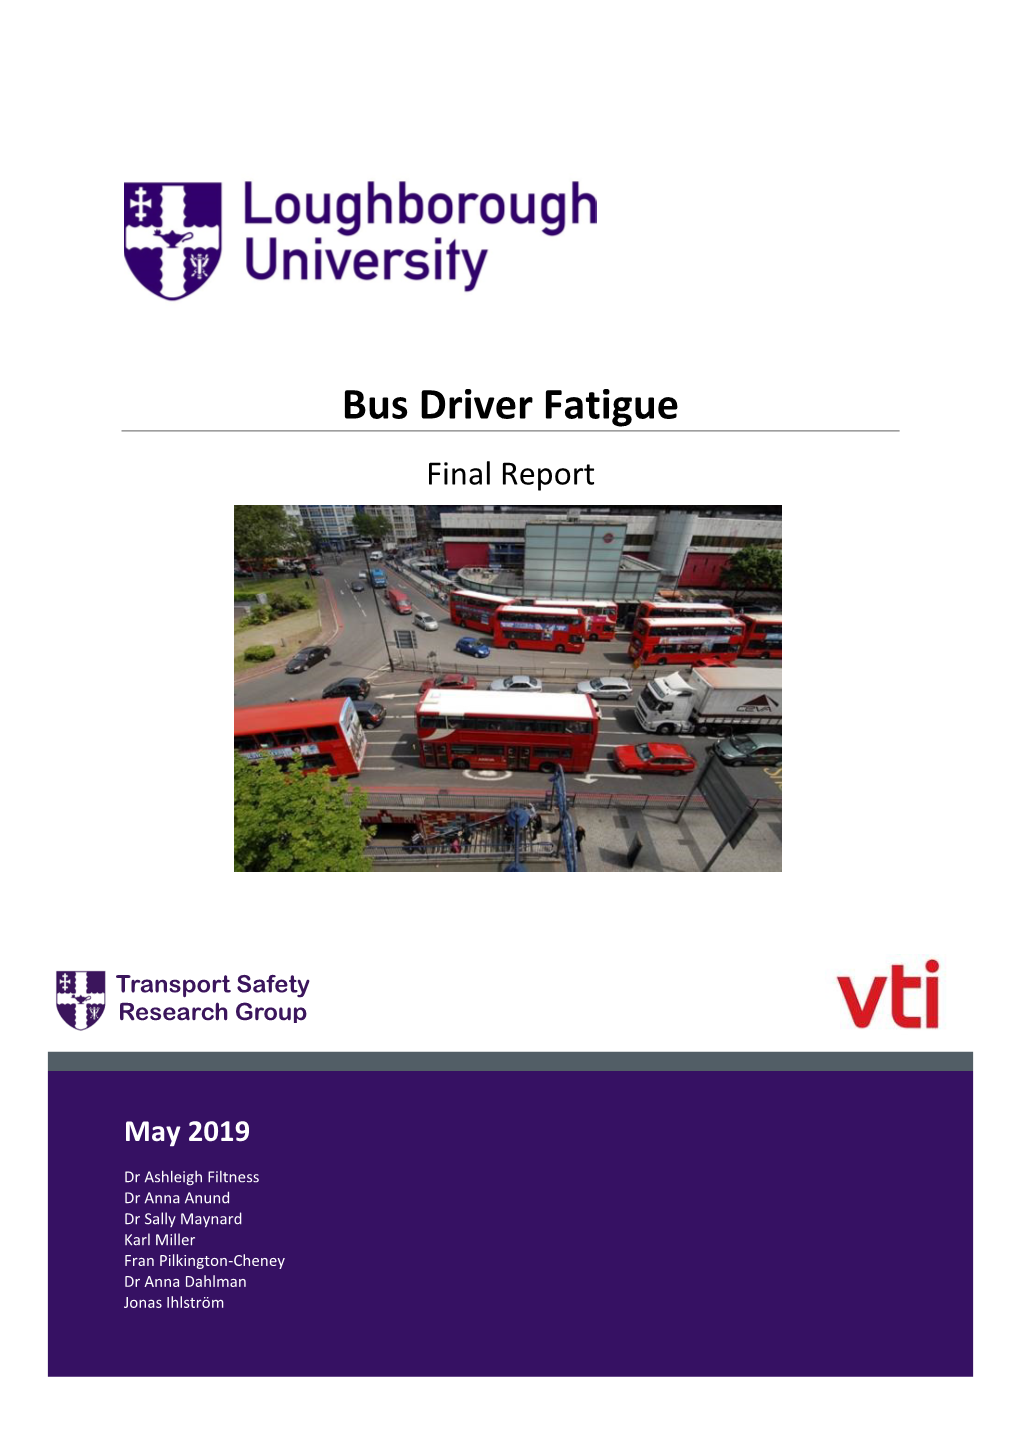 Bus Driver Fatigue Final Report